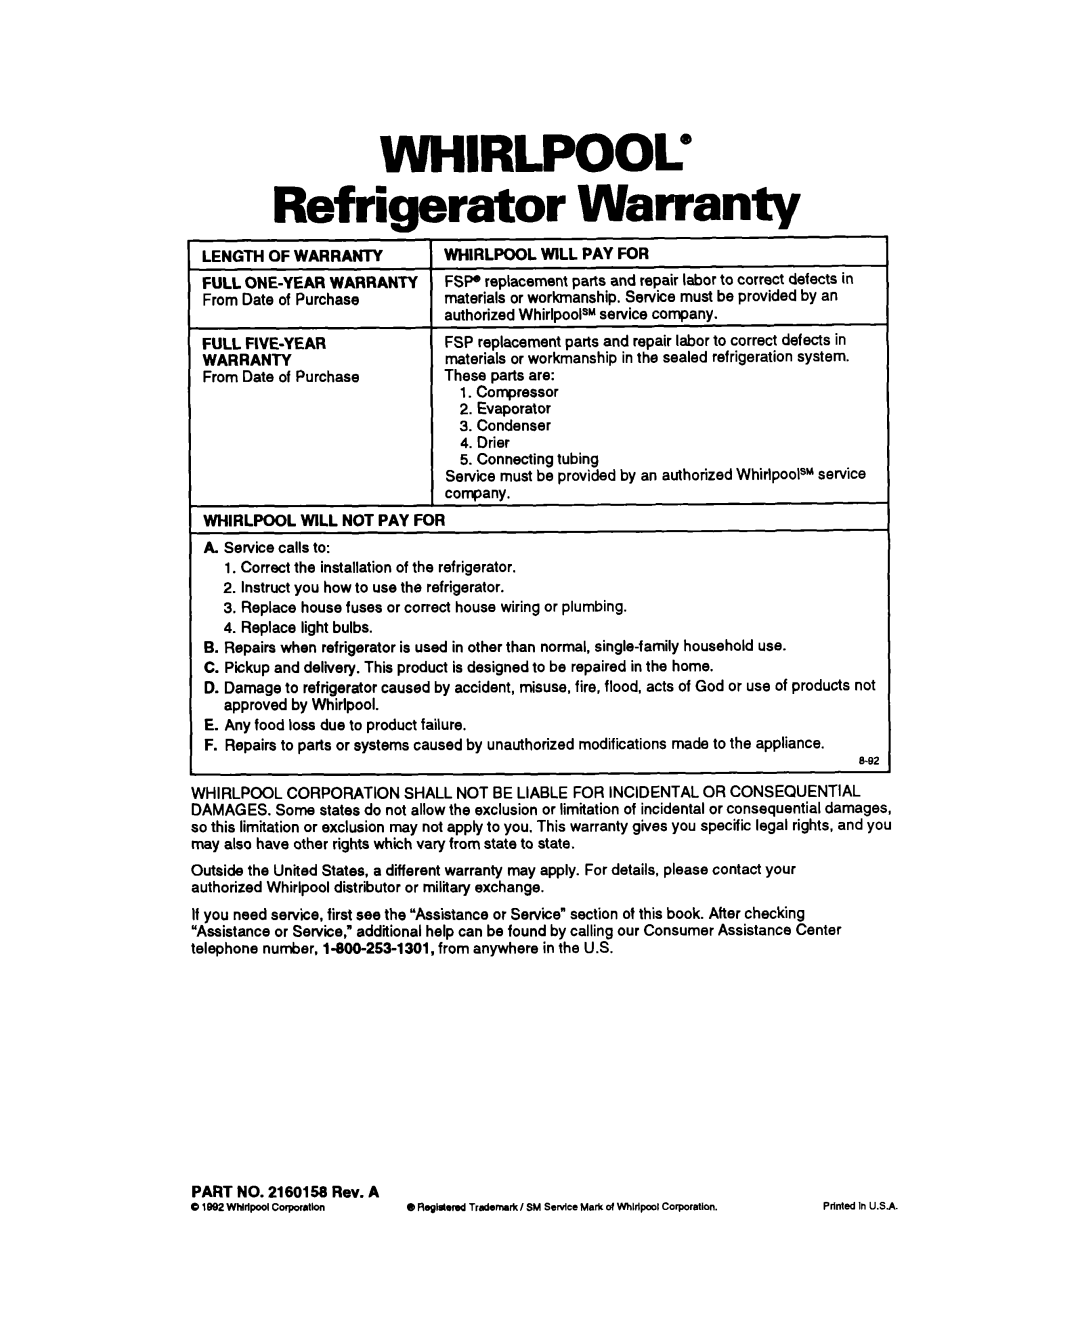 Whirlpool EB21DK warranty WHIRLPOOL@ Refrigerator Warranty 